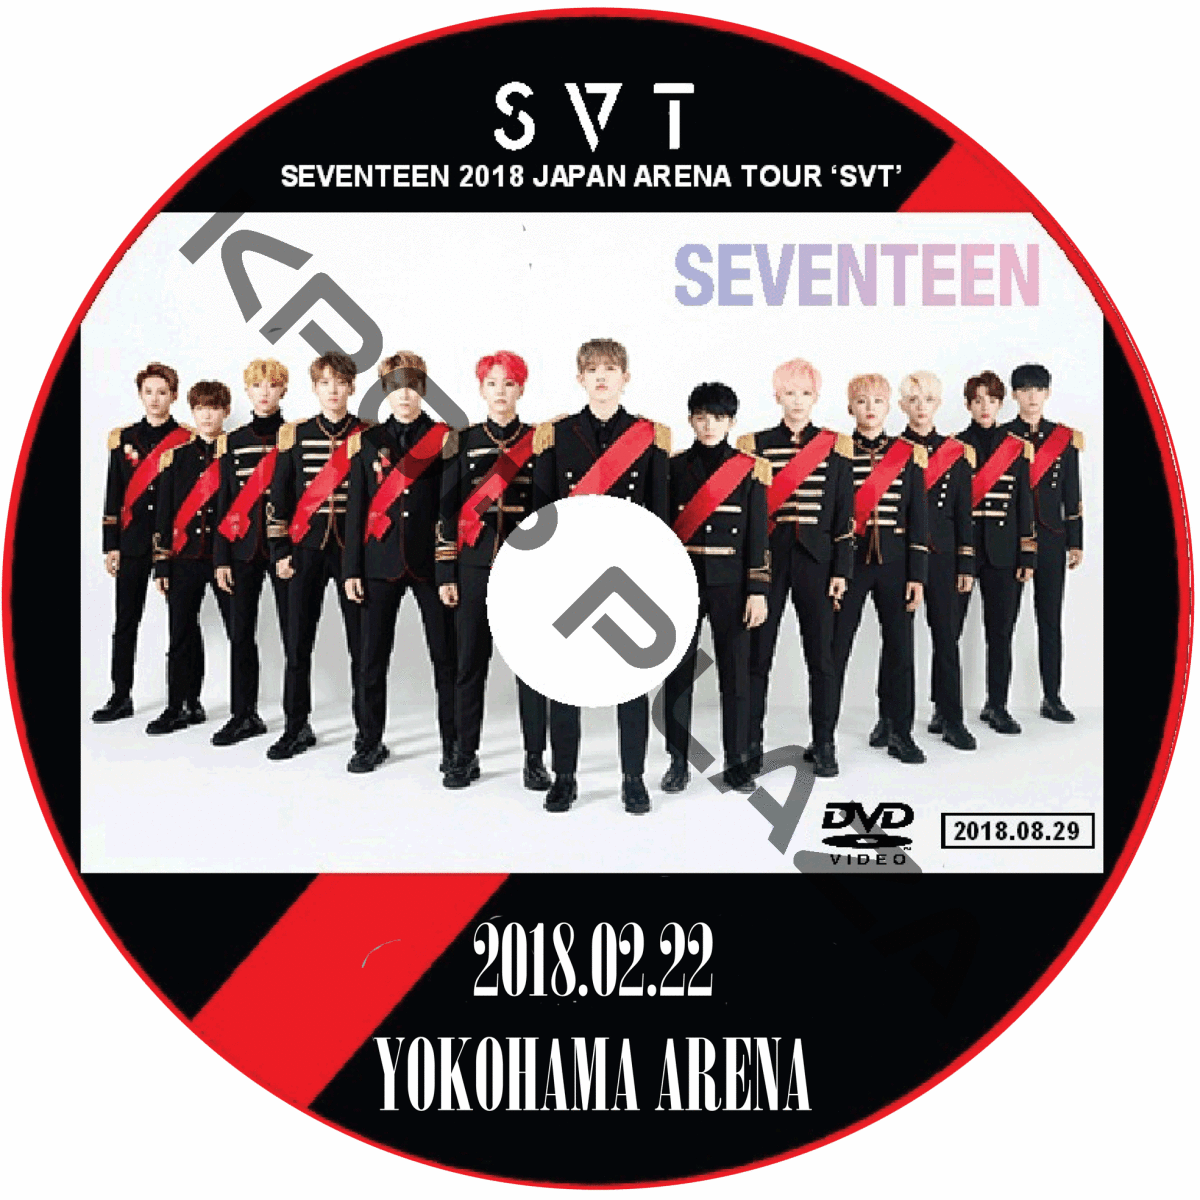 SEVENTEEN 2018 JAPAN ARENA TOUR SVTSEVENTEEN TOUR 2018 ARENA SVT JAPAN